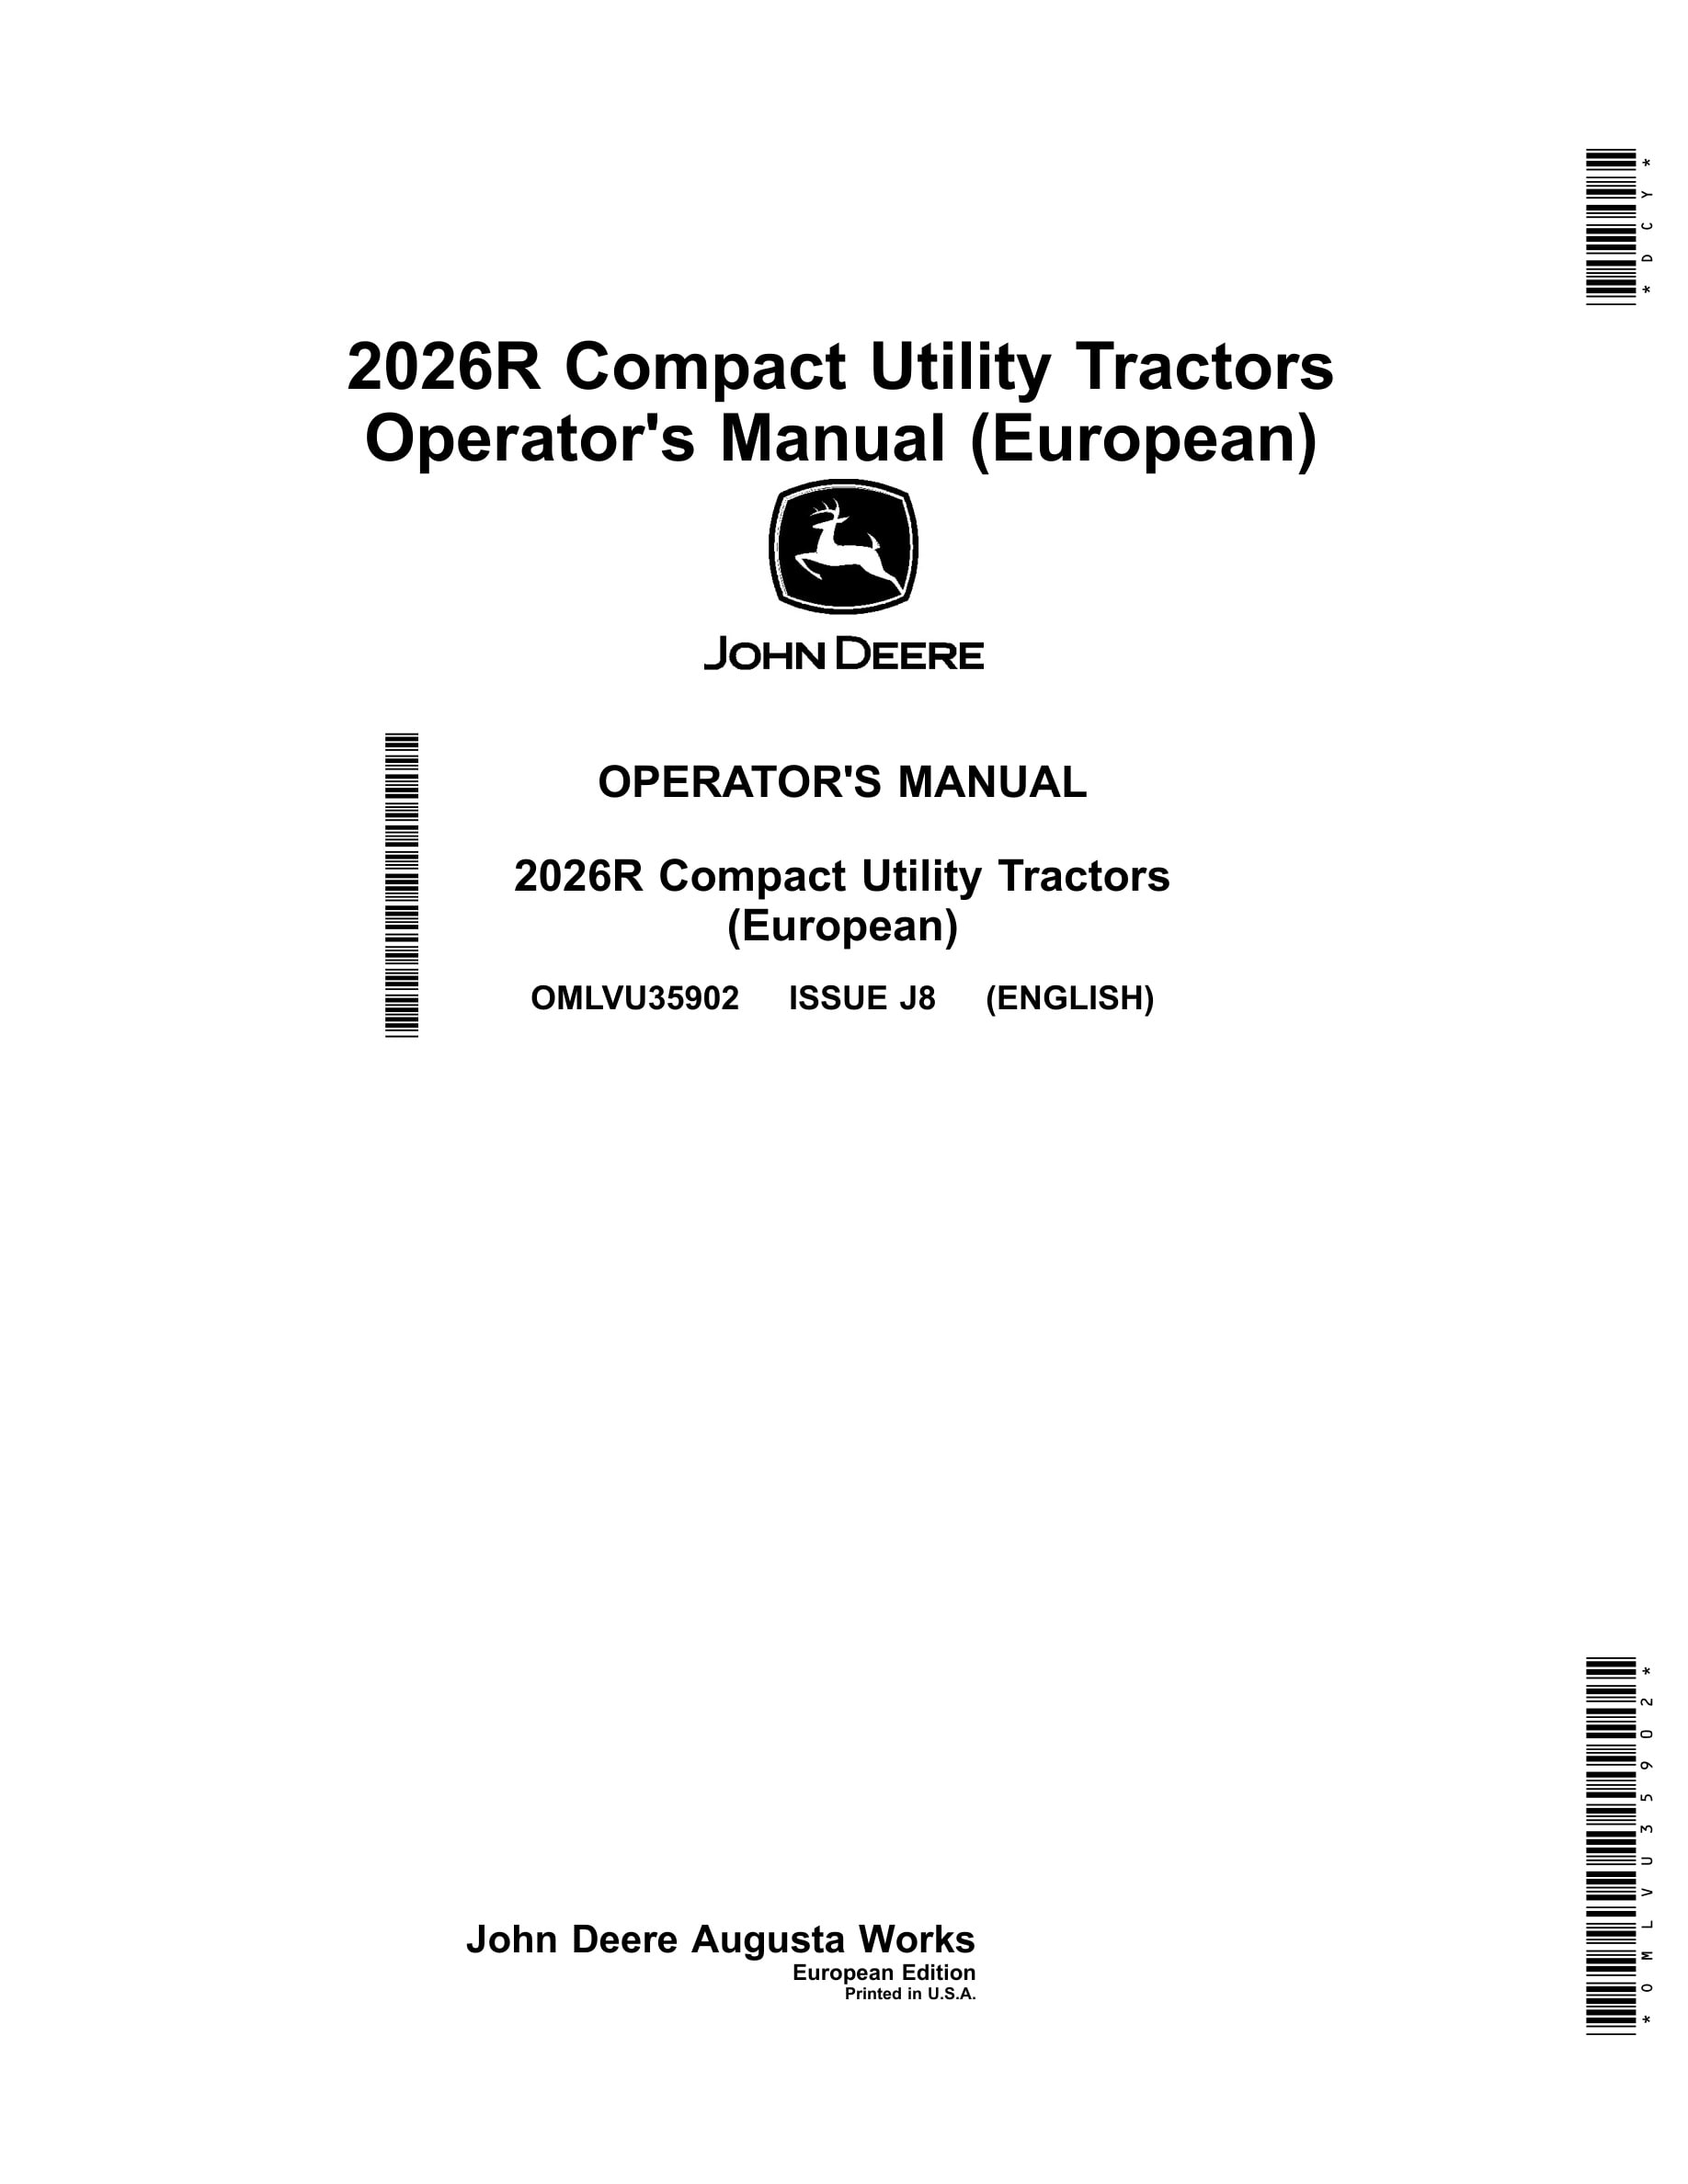 John Deere 2026r Compact Utility Tractors Operator Manuals OMLVU35902-1